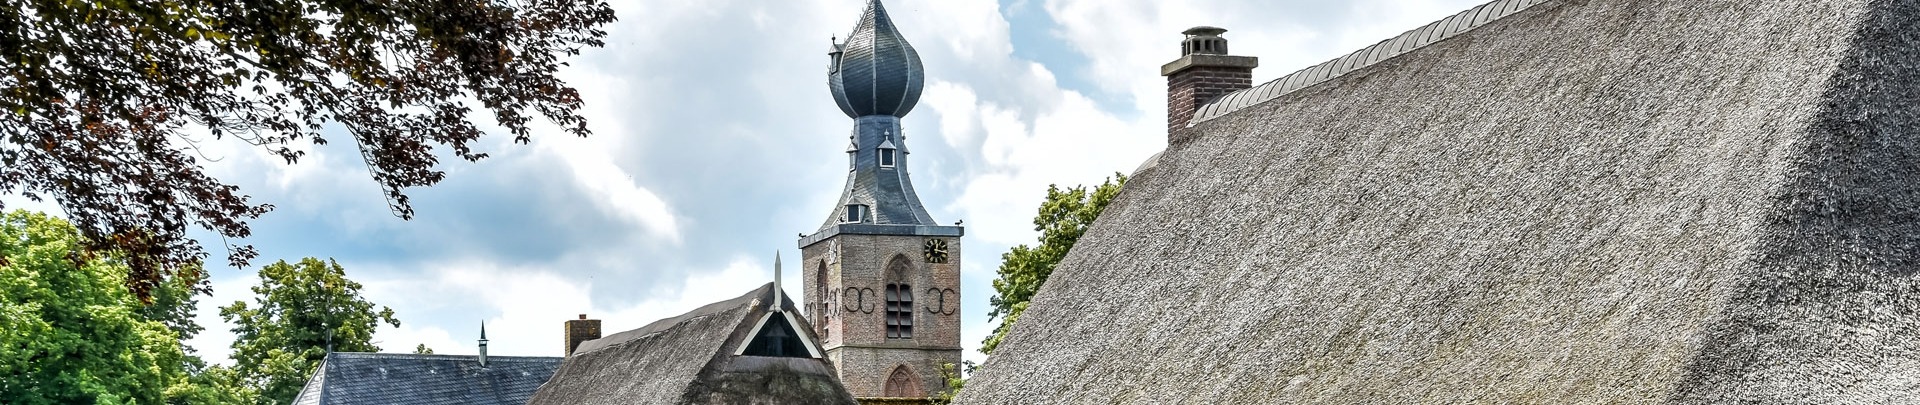 Dwingeloo is een levendig dorp in Drenthe